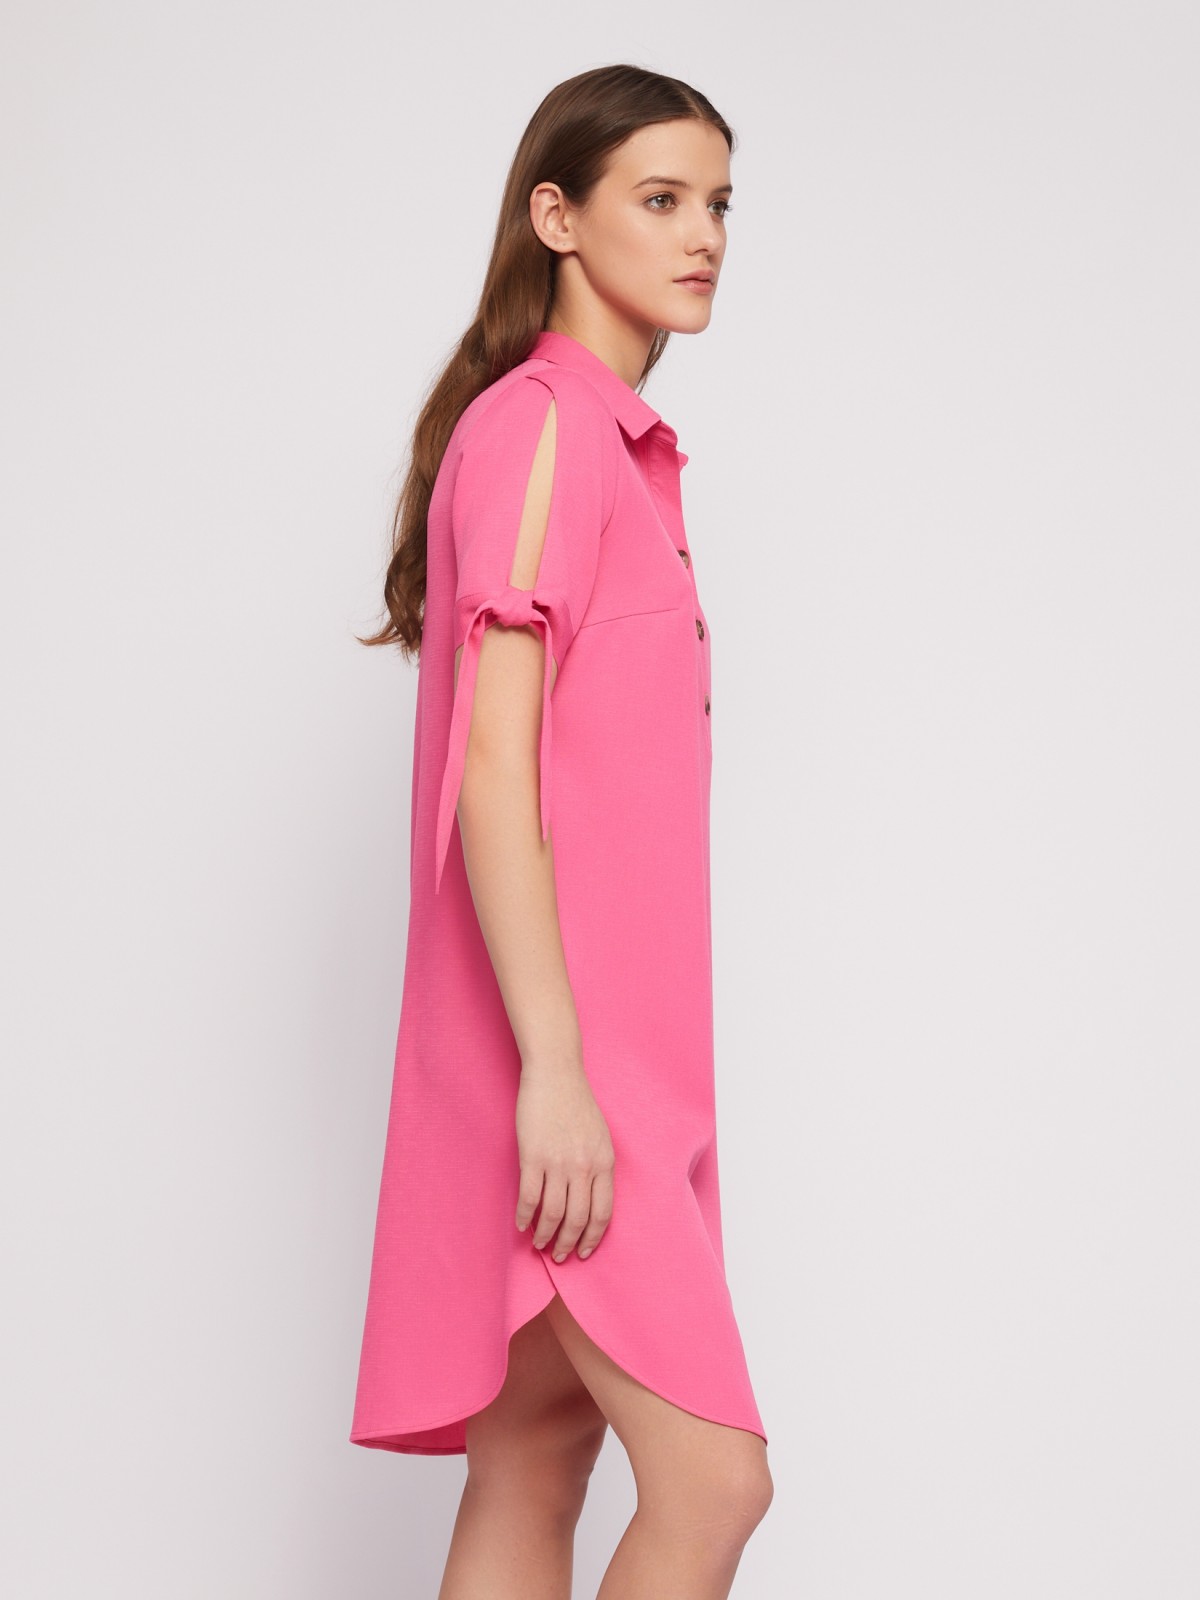 Платье-рубашка мини с акцентом на рукавах zolla 024218239333, цвет фуксия, размер S - фото 3